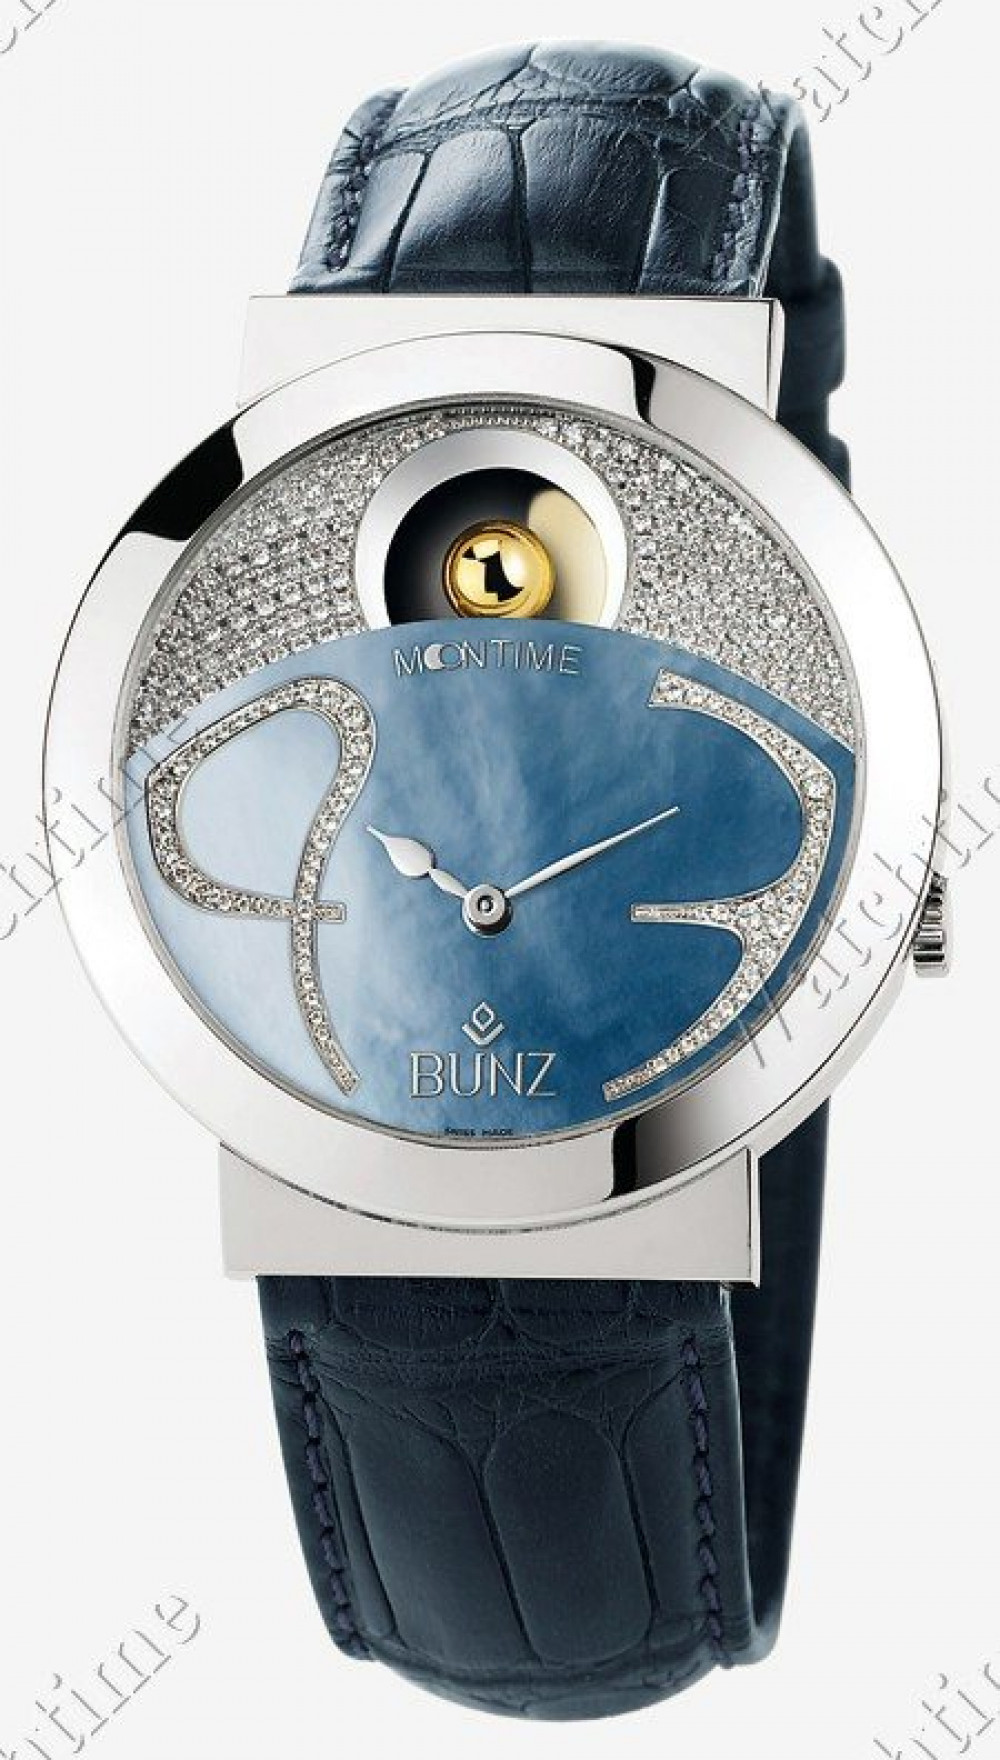 Zegarek firmy Bunz, model Moontime III